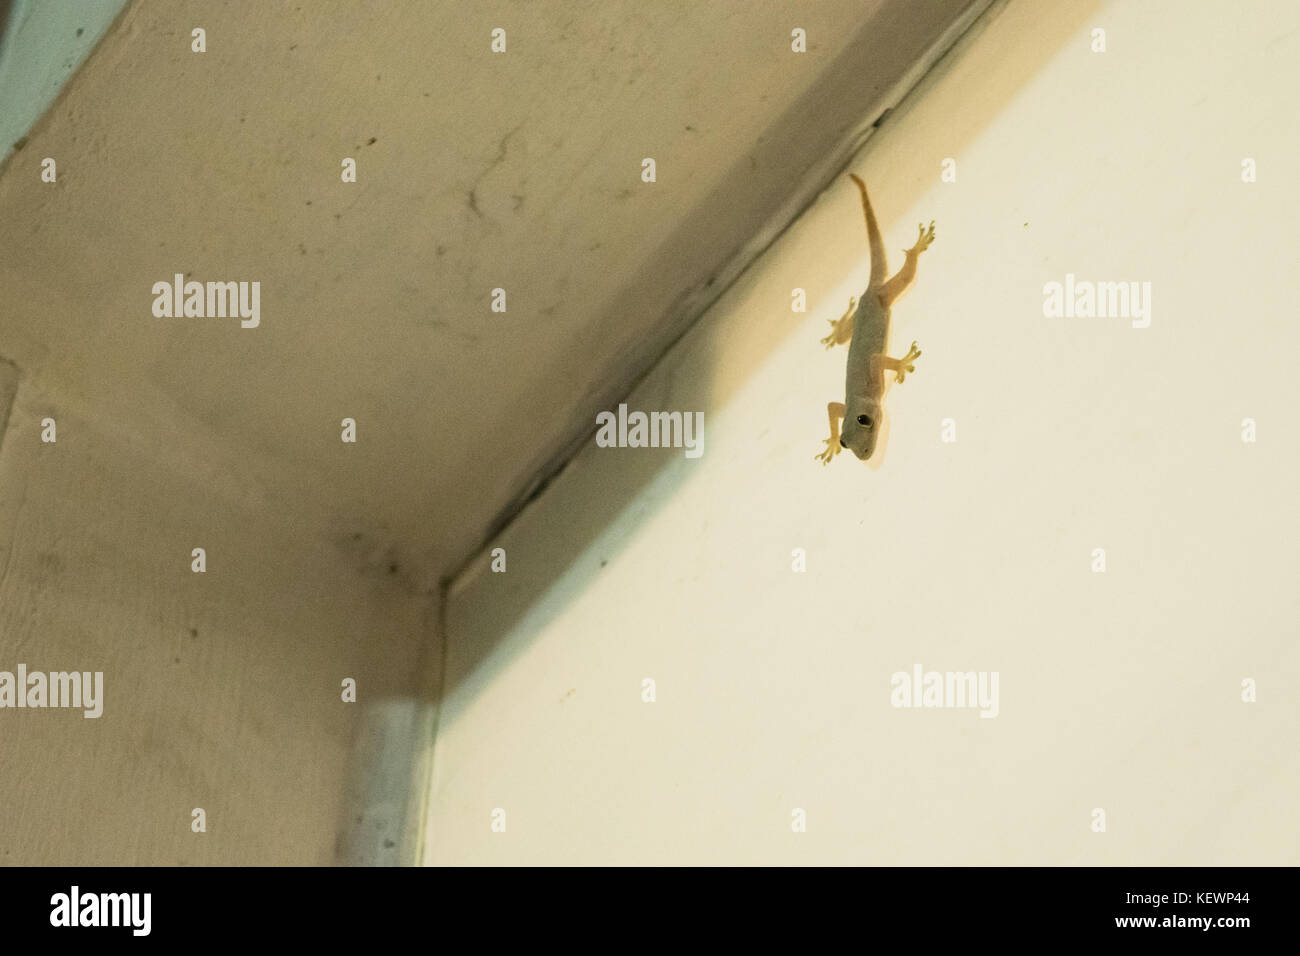 Asianreptile casa comune geco Hemidactylus frenatus, appeso a incollato ad un muro bianco di una casa in Phnom Penh Cambogia, Sud Est asiatico Foto Stock